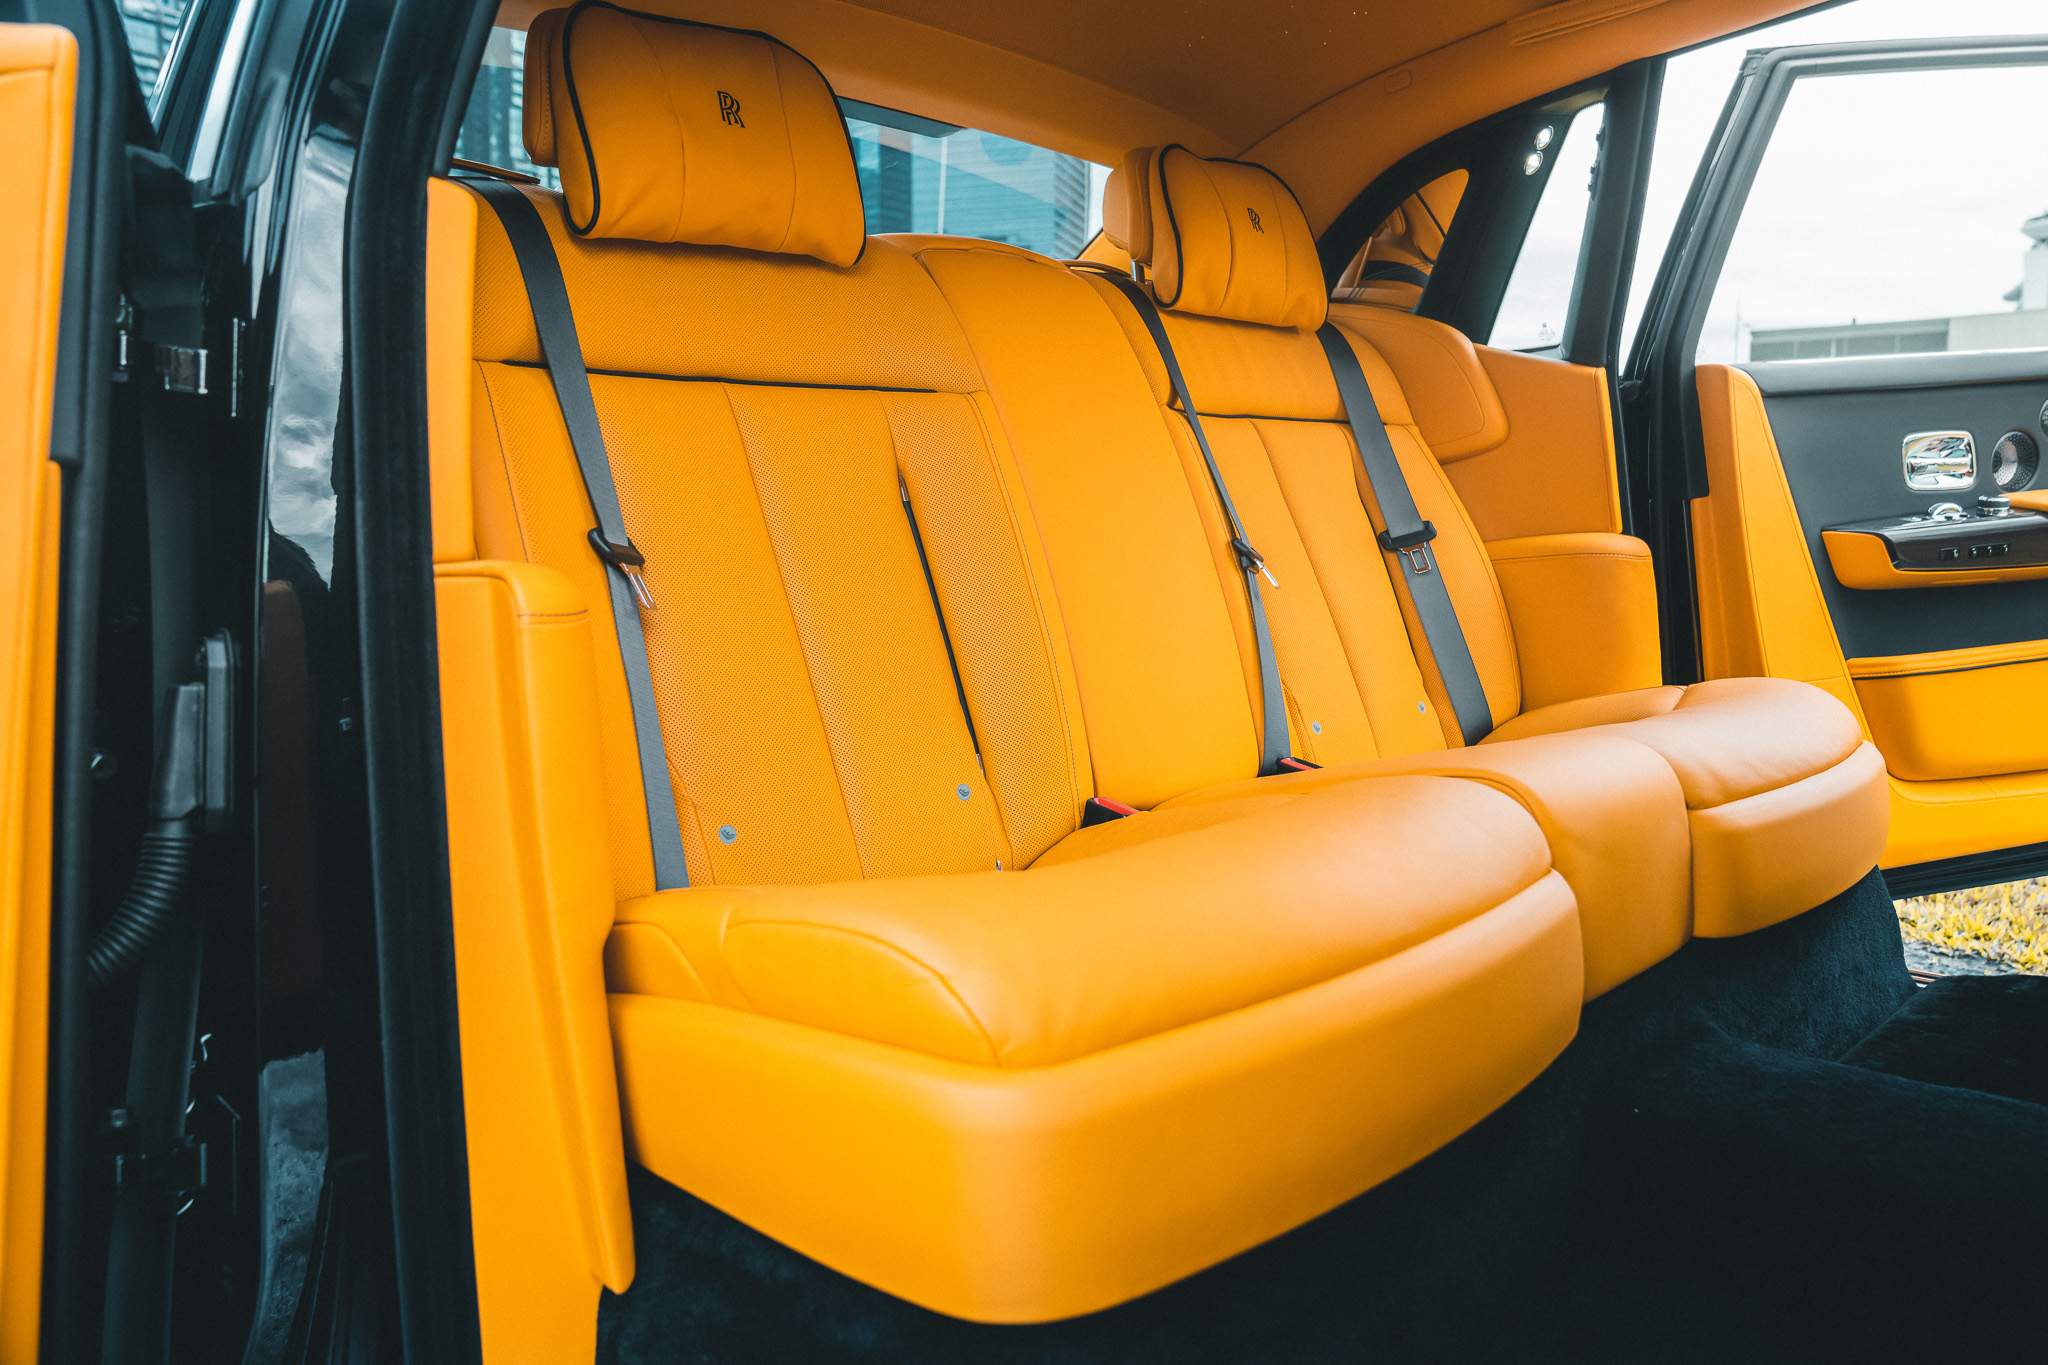 Rolls-Royce Phantom Series II rear seats